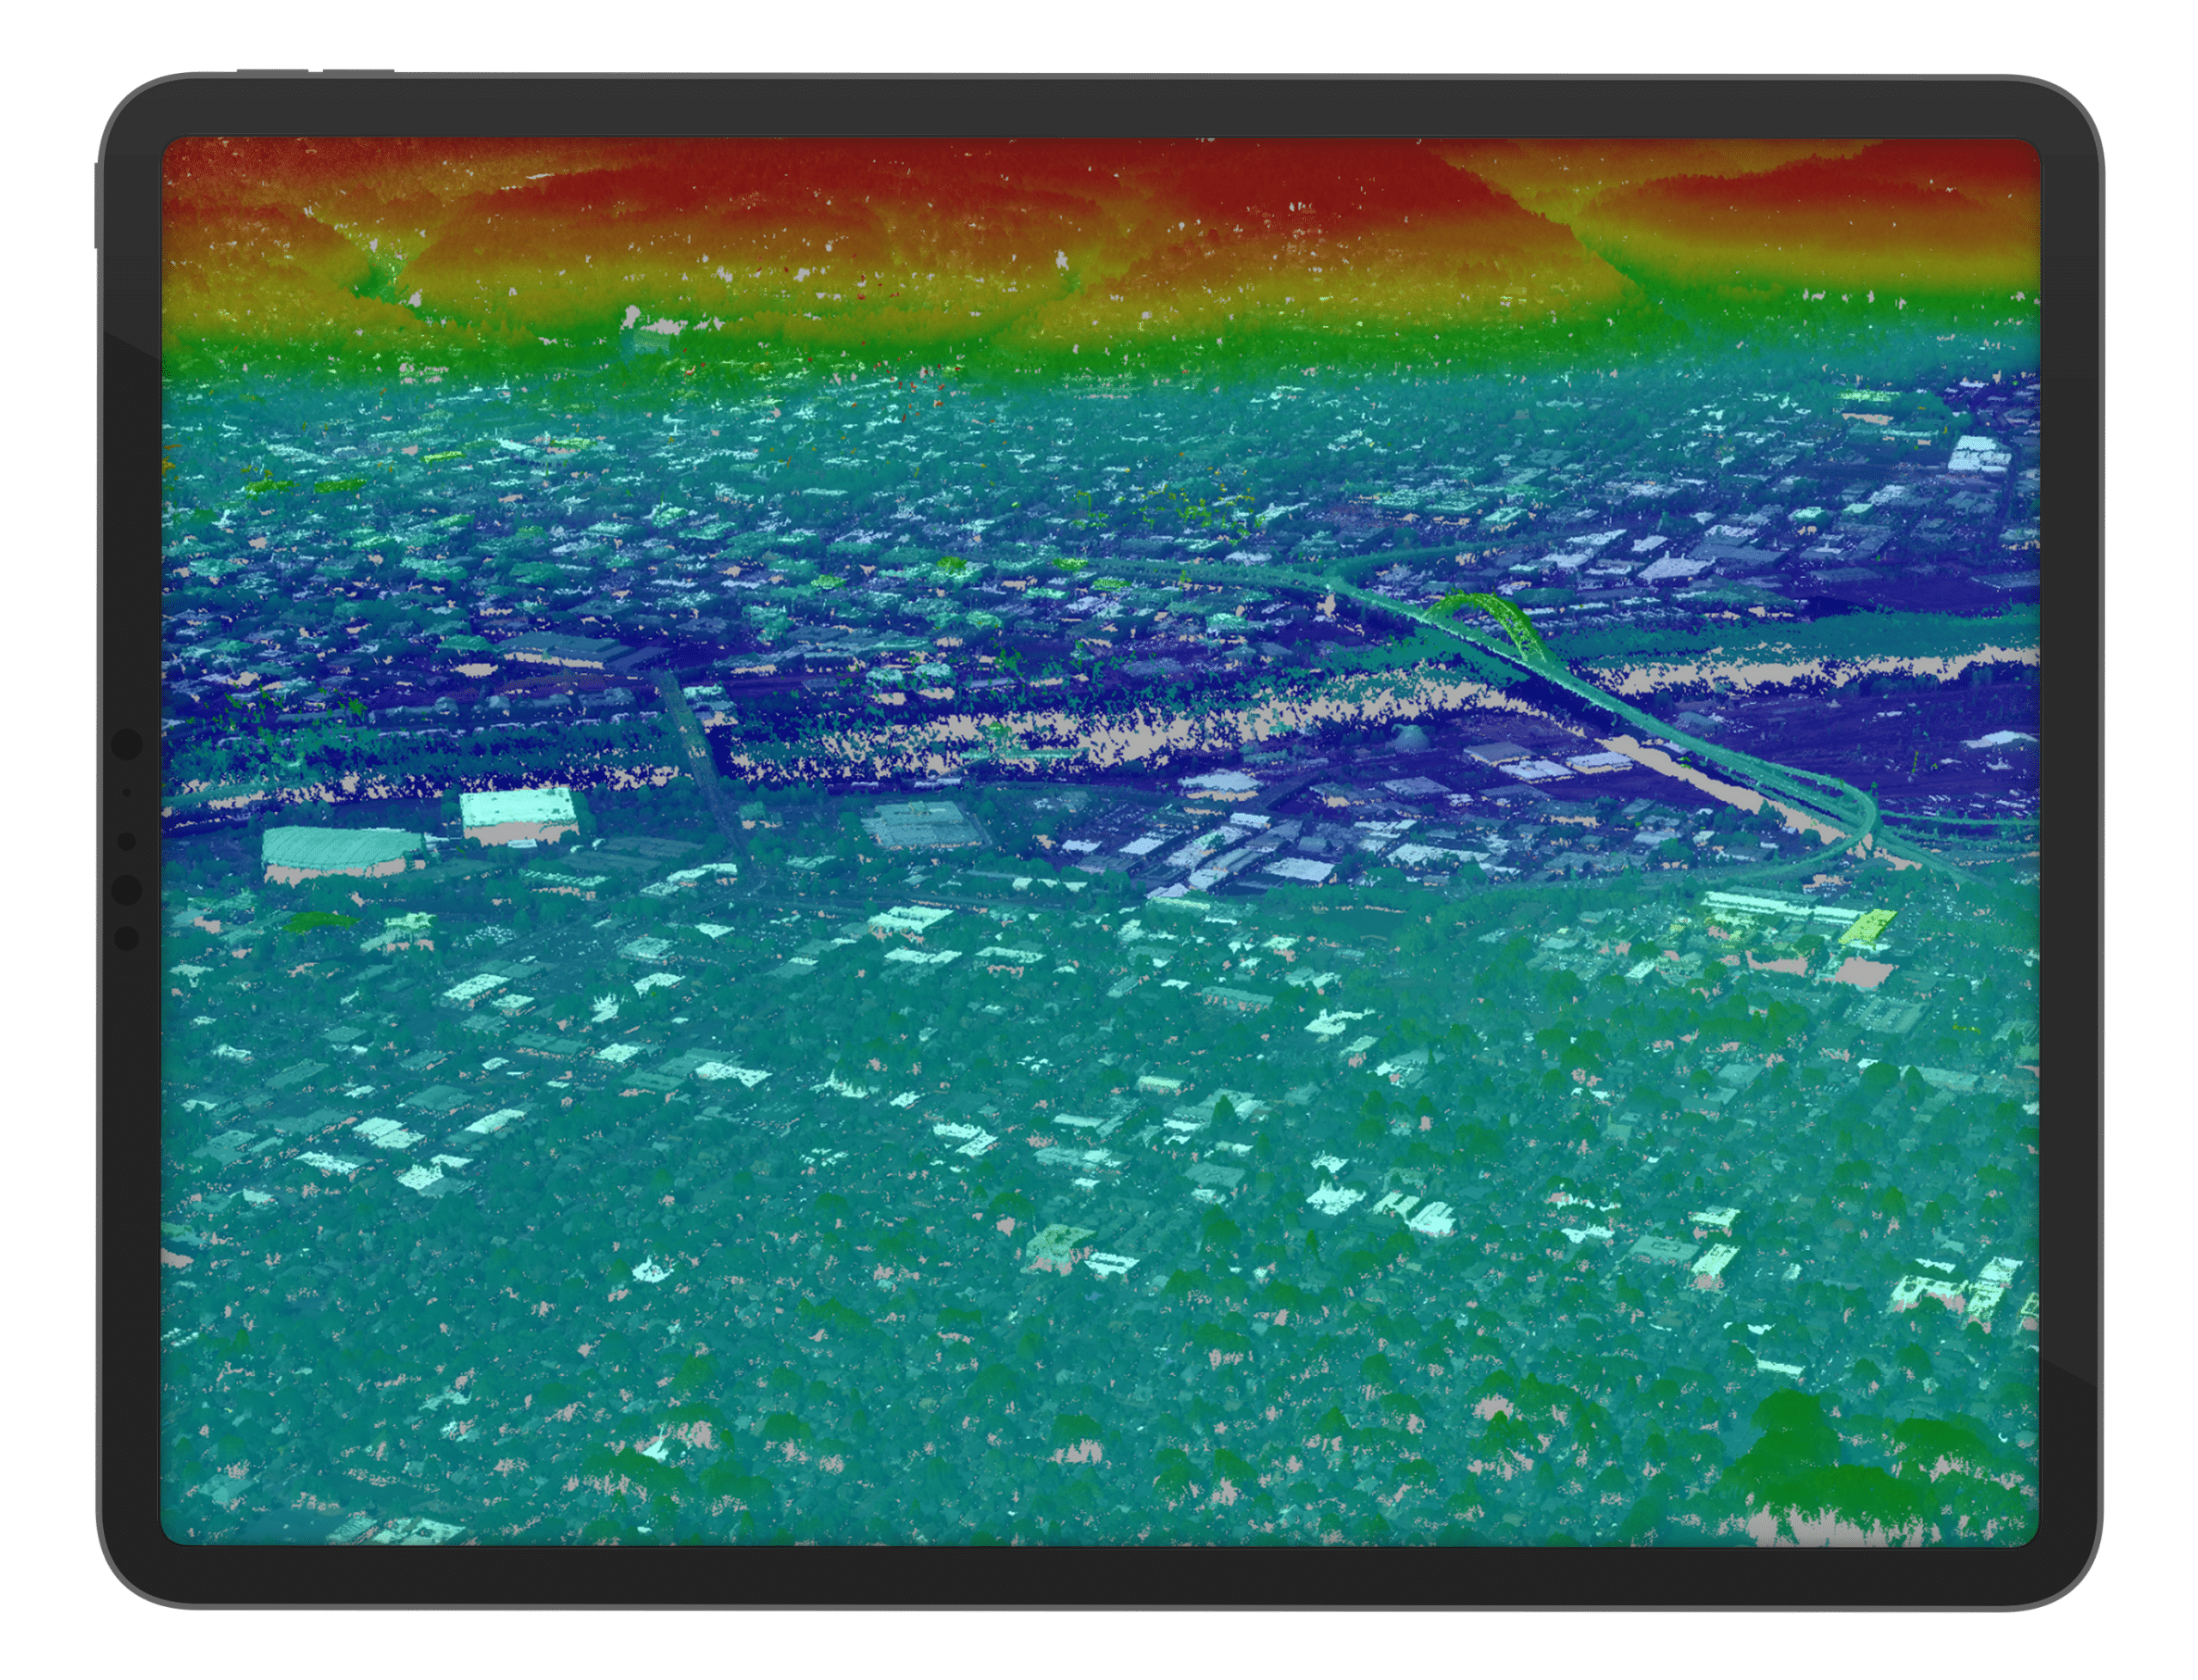 iPad city heat map imagery